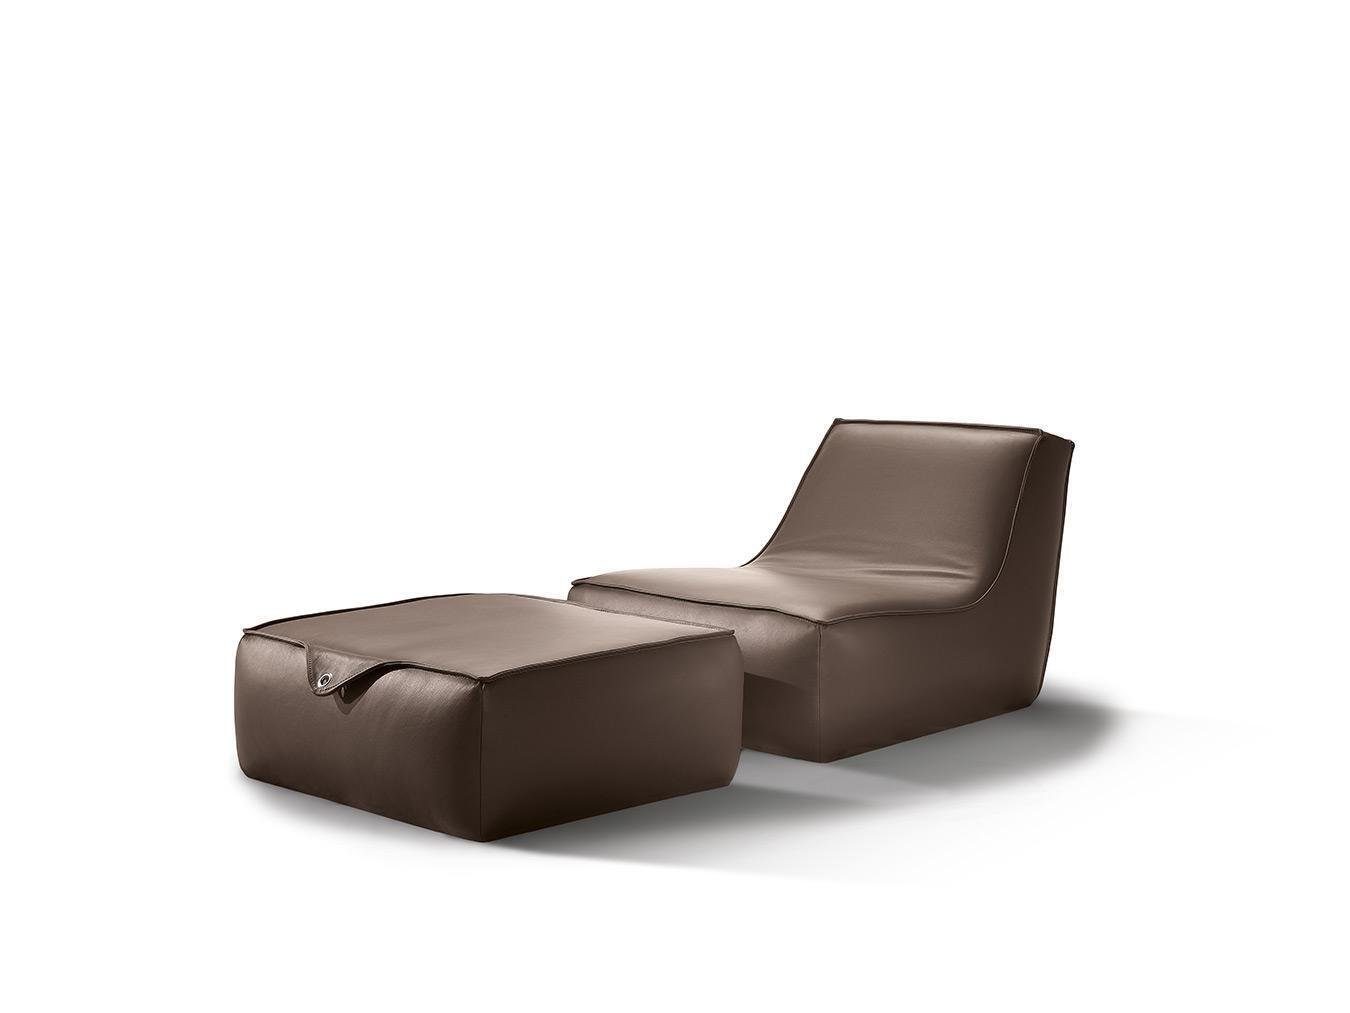 Luxus Sessel Einsitzer Hocker Leder Möbel Sessel JVmoebel Grau Design Einsitzer Modern